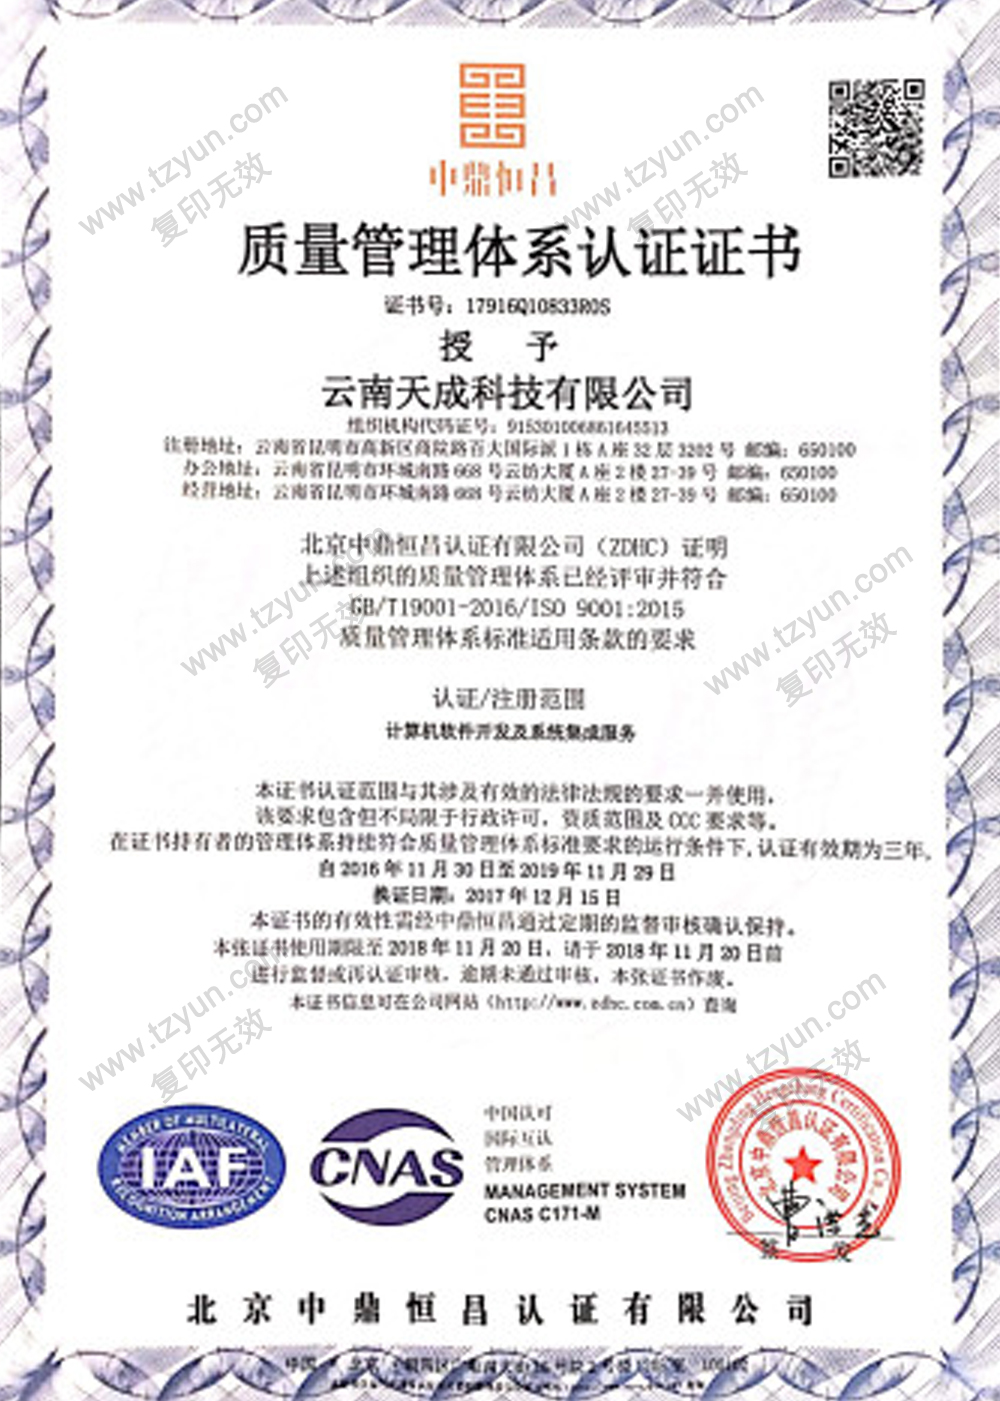 通过ISO9001质量管理体系认证